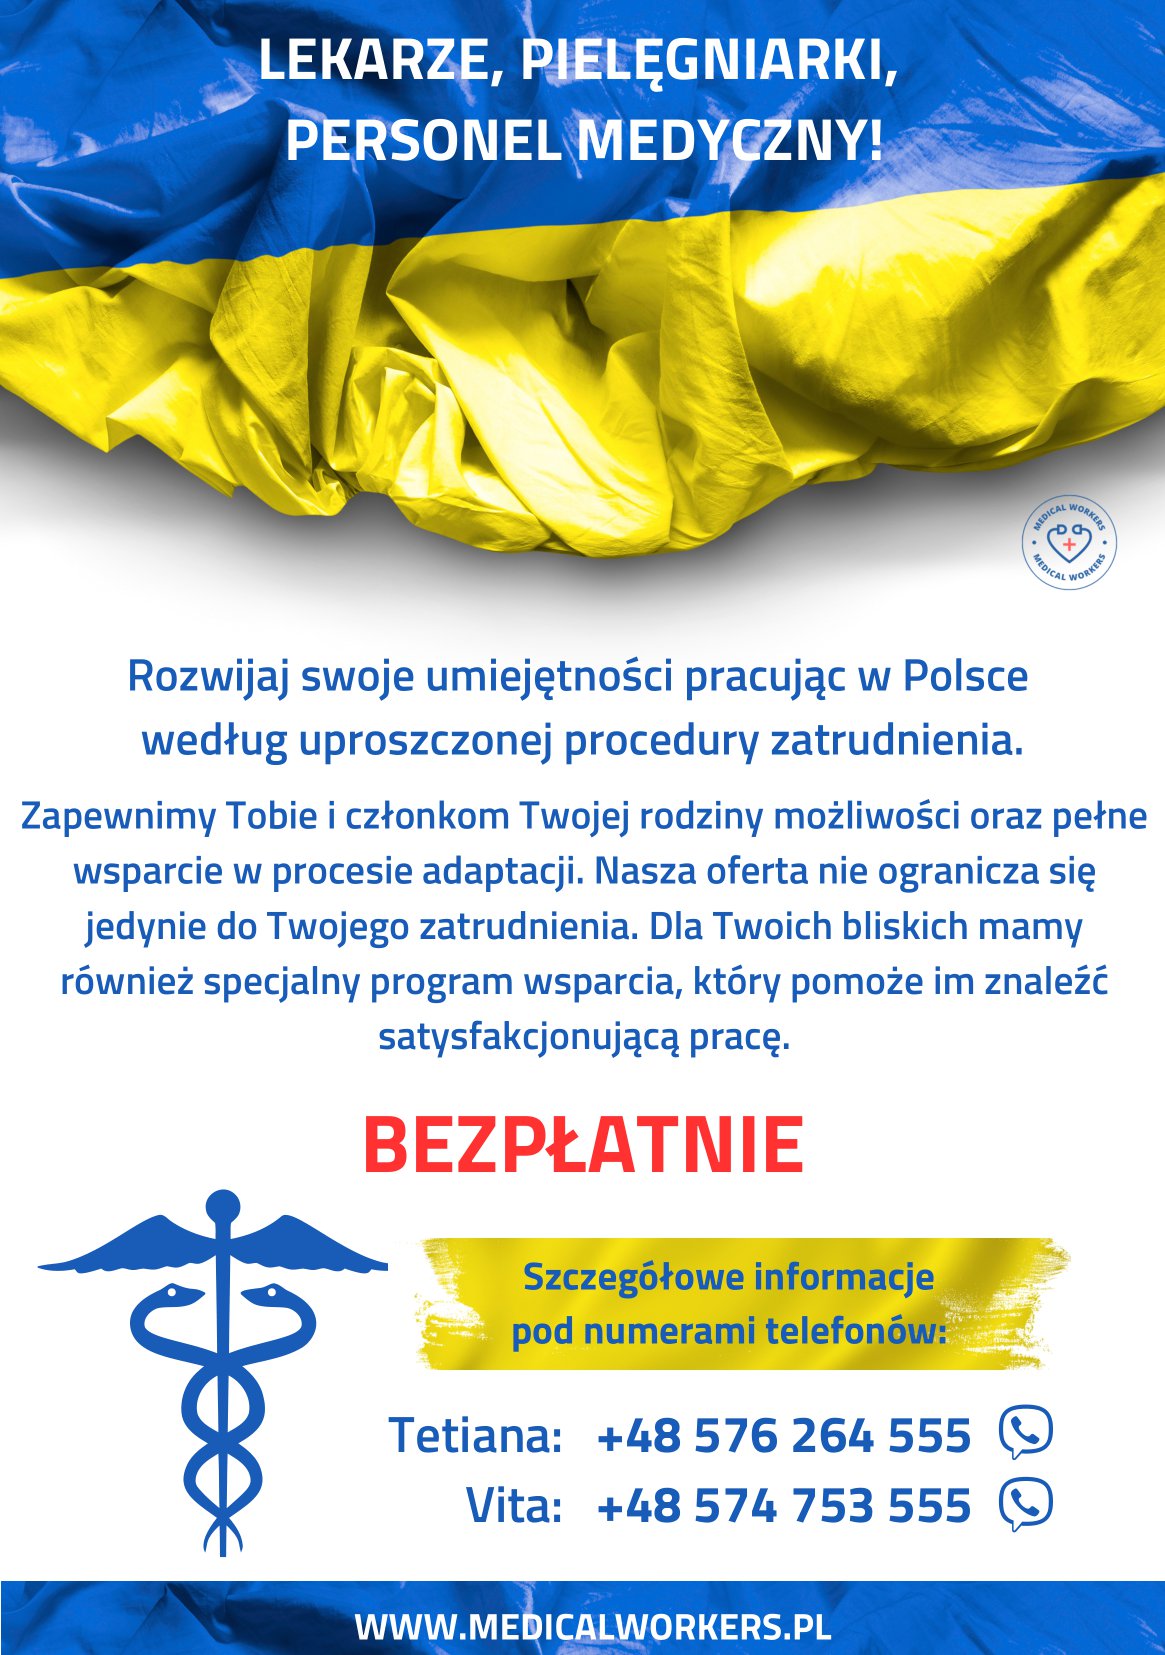 Personel medyczny - ulotka informacyjna w języku polskim (1 strona)